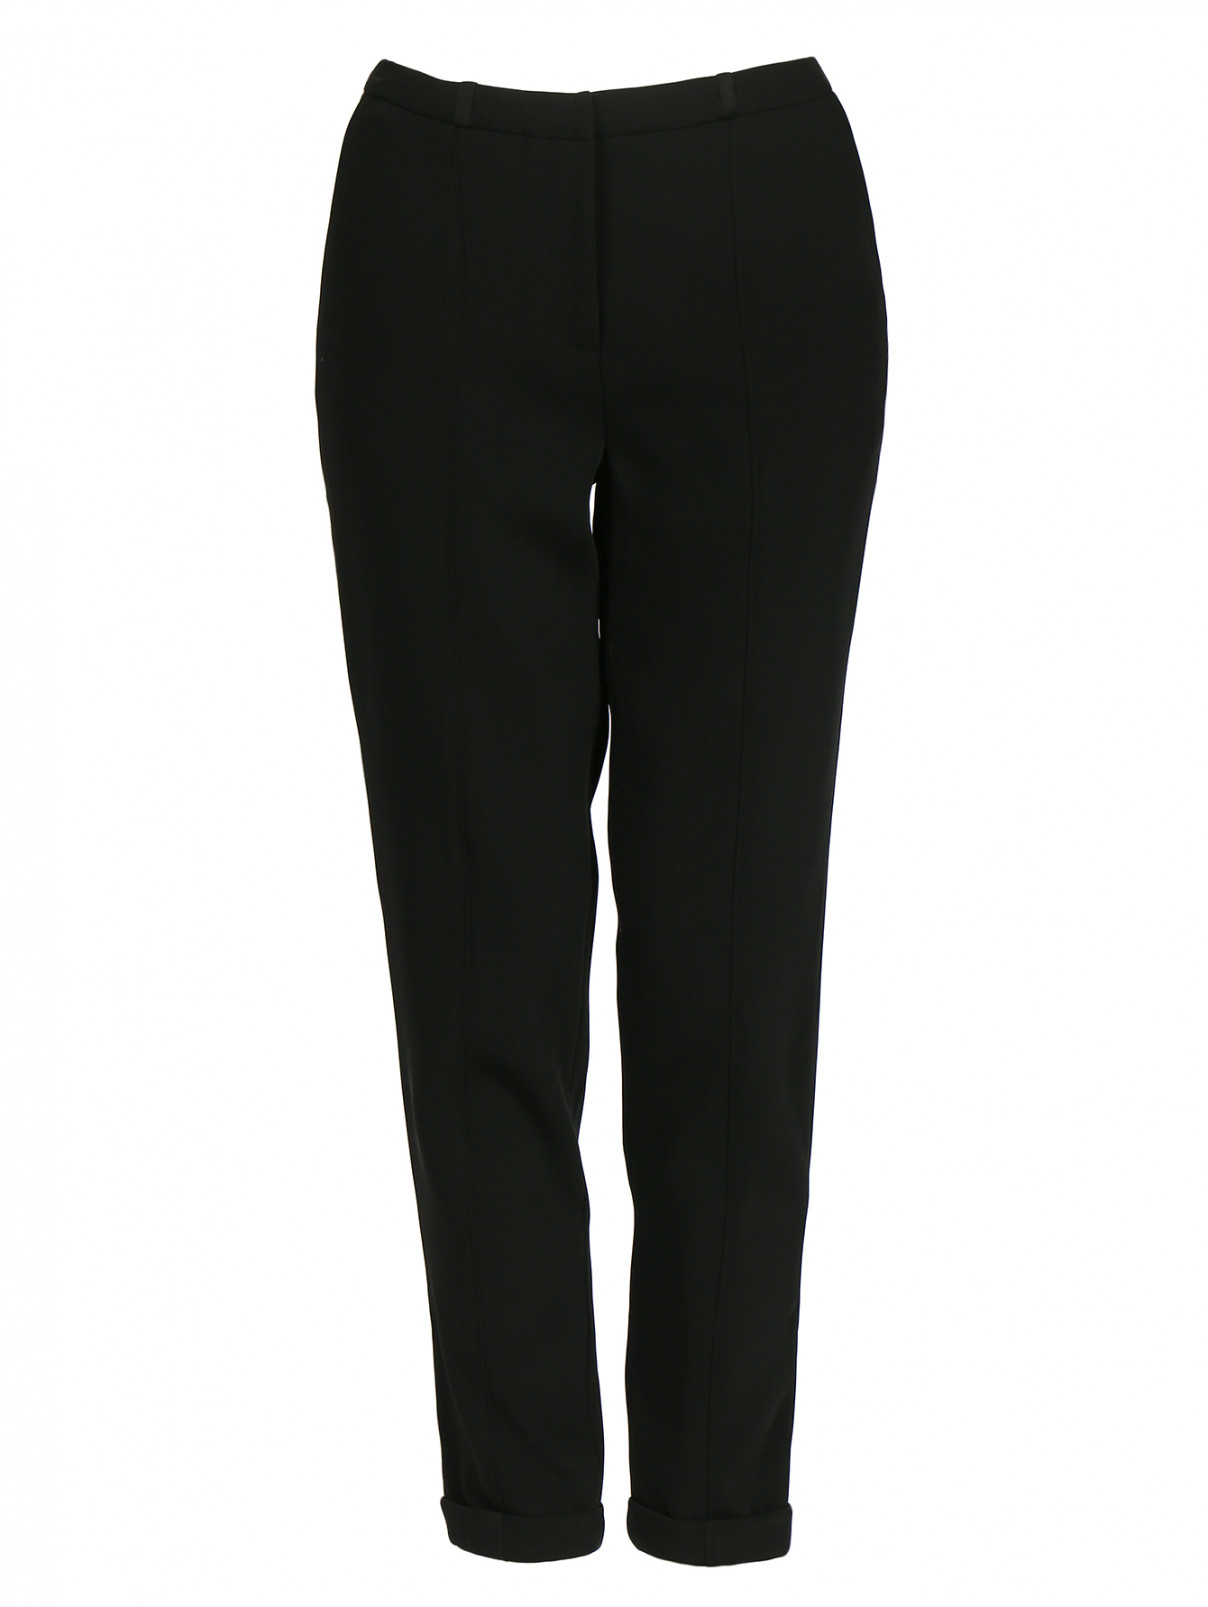 Узкие брюки со стрелками Elizabeth & James  –  Общий вид  – Цвет:  Черный